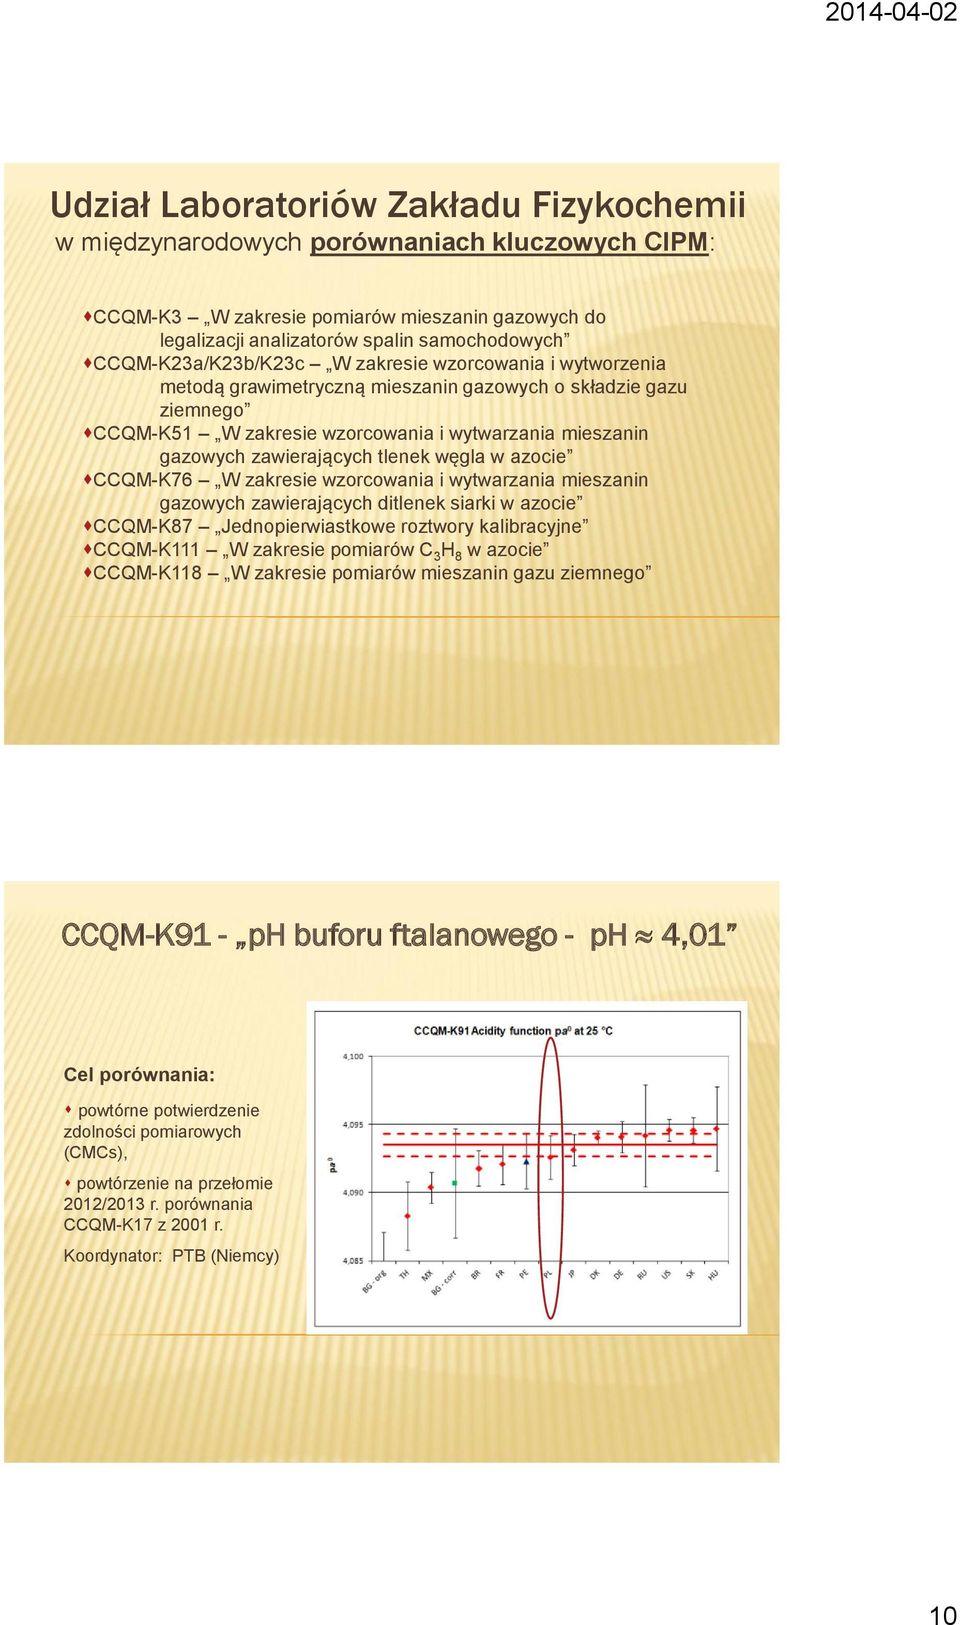 zawierających tlenek węgla w azocie CCQM-K76 W zakresie wzorcowania i wytwarzania mieszanin gazowych zawierających ditlenek siarki w azocie CCQM-K87 Jednopierwiastkowe roztwory kalibracyjne CCQM-K111